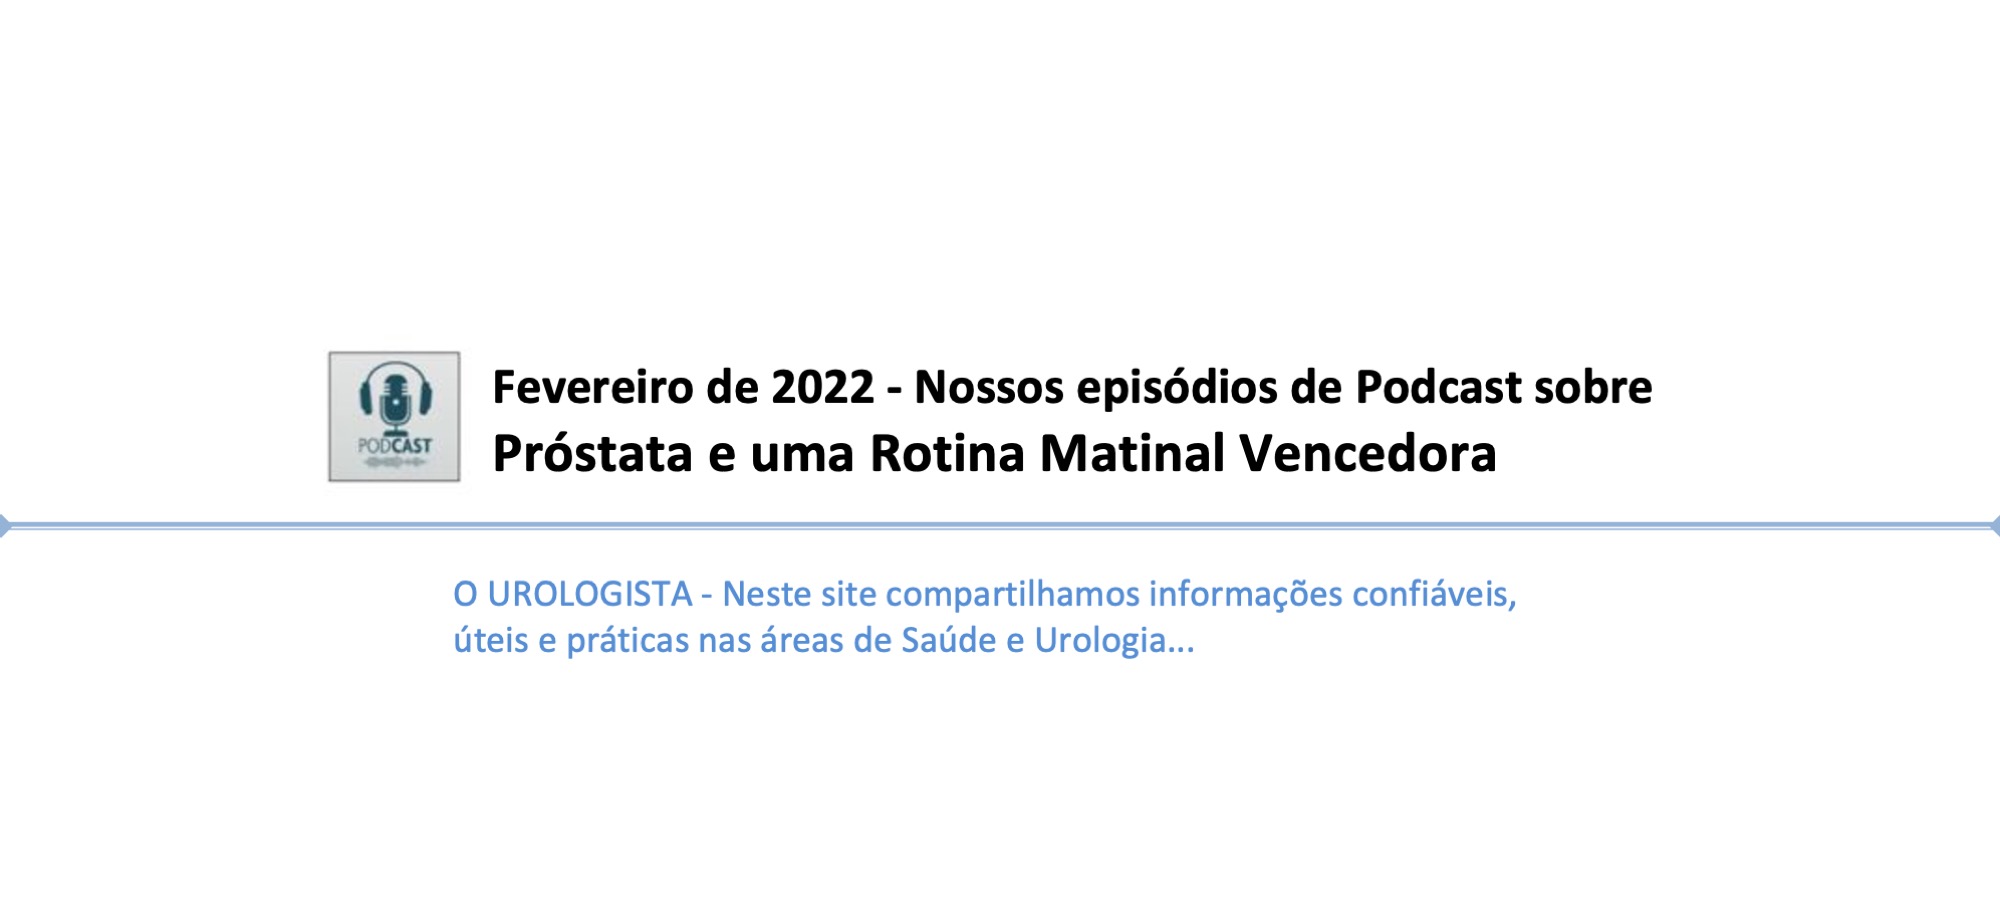 Fevereiro de 2022 - Nossos episódios de Podcast sobre Próstata e uma Rotina Matinal Vencedora